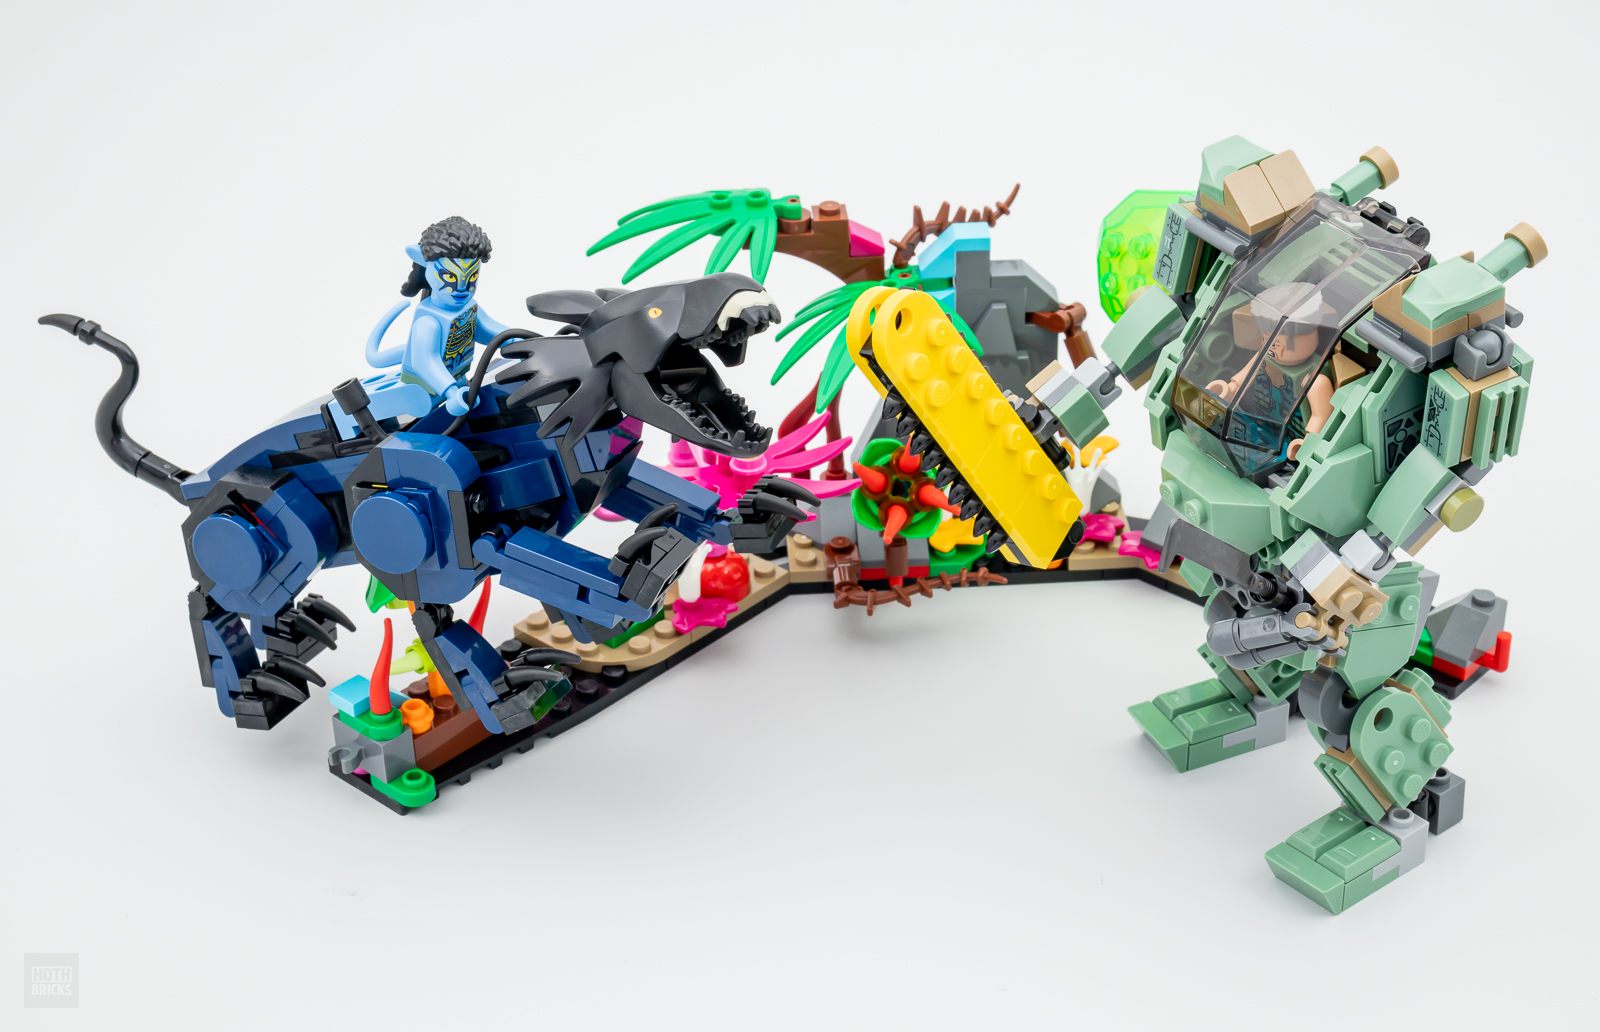 Hãy xem LEGO Avatar 75571 Neytiri & Thanator vs. AMP Suit Quaritch 2024, nơi hai nhân vật huyền thoại đối đầu nhau trong một trận chiến bạo lực, chất lượng hình ảnh hoàn hảo, cùng đội ngũ kỹ thuật viên giỏi nhất. Bộ phim sẽ đem đến những phút giây thư giãn tuyệt vời cho những ai yêu thích LEGO và Avatar.